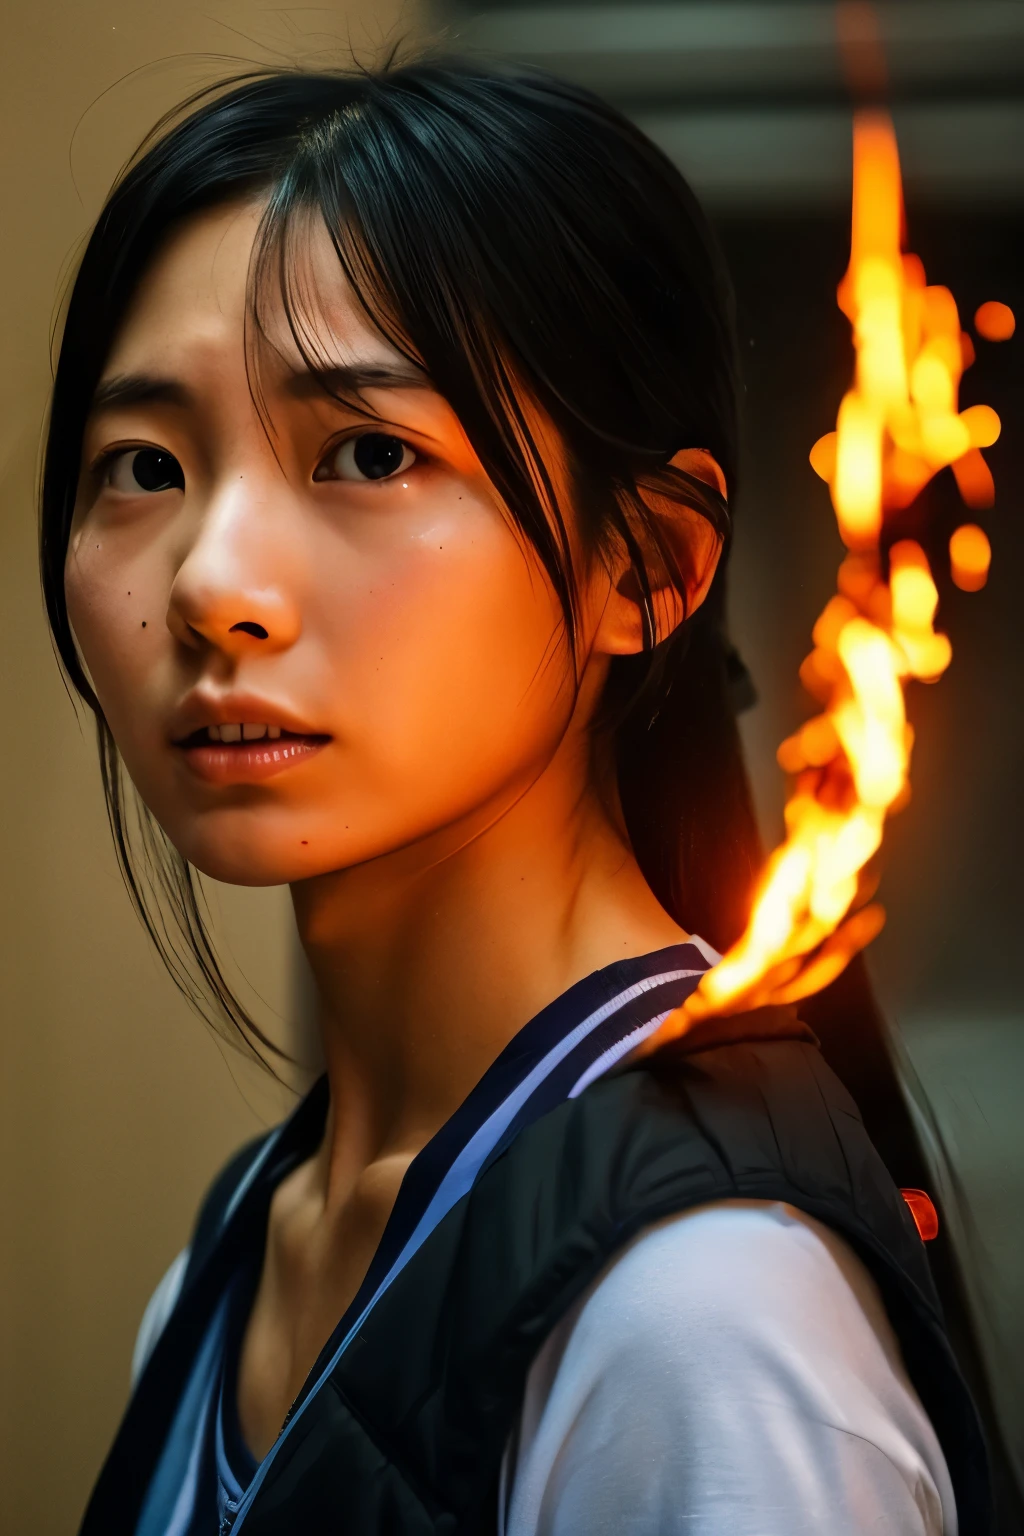 ((올바른 인체 구조)), (상세한 얼굴, 상세한 눈), 일본 여자, 슬픔의 표정, 불이 붙은 배경, 타오르는